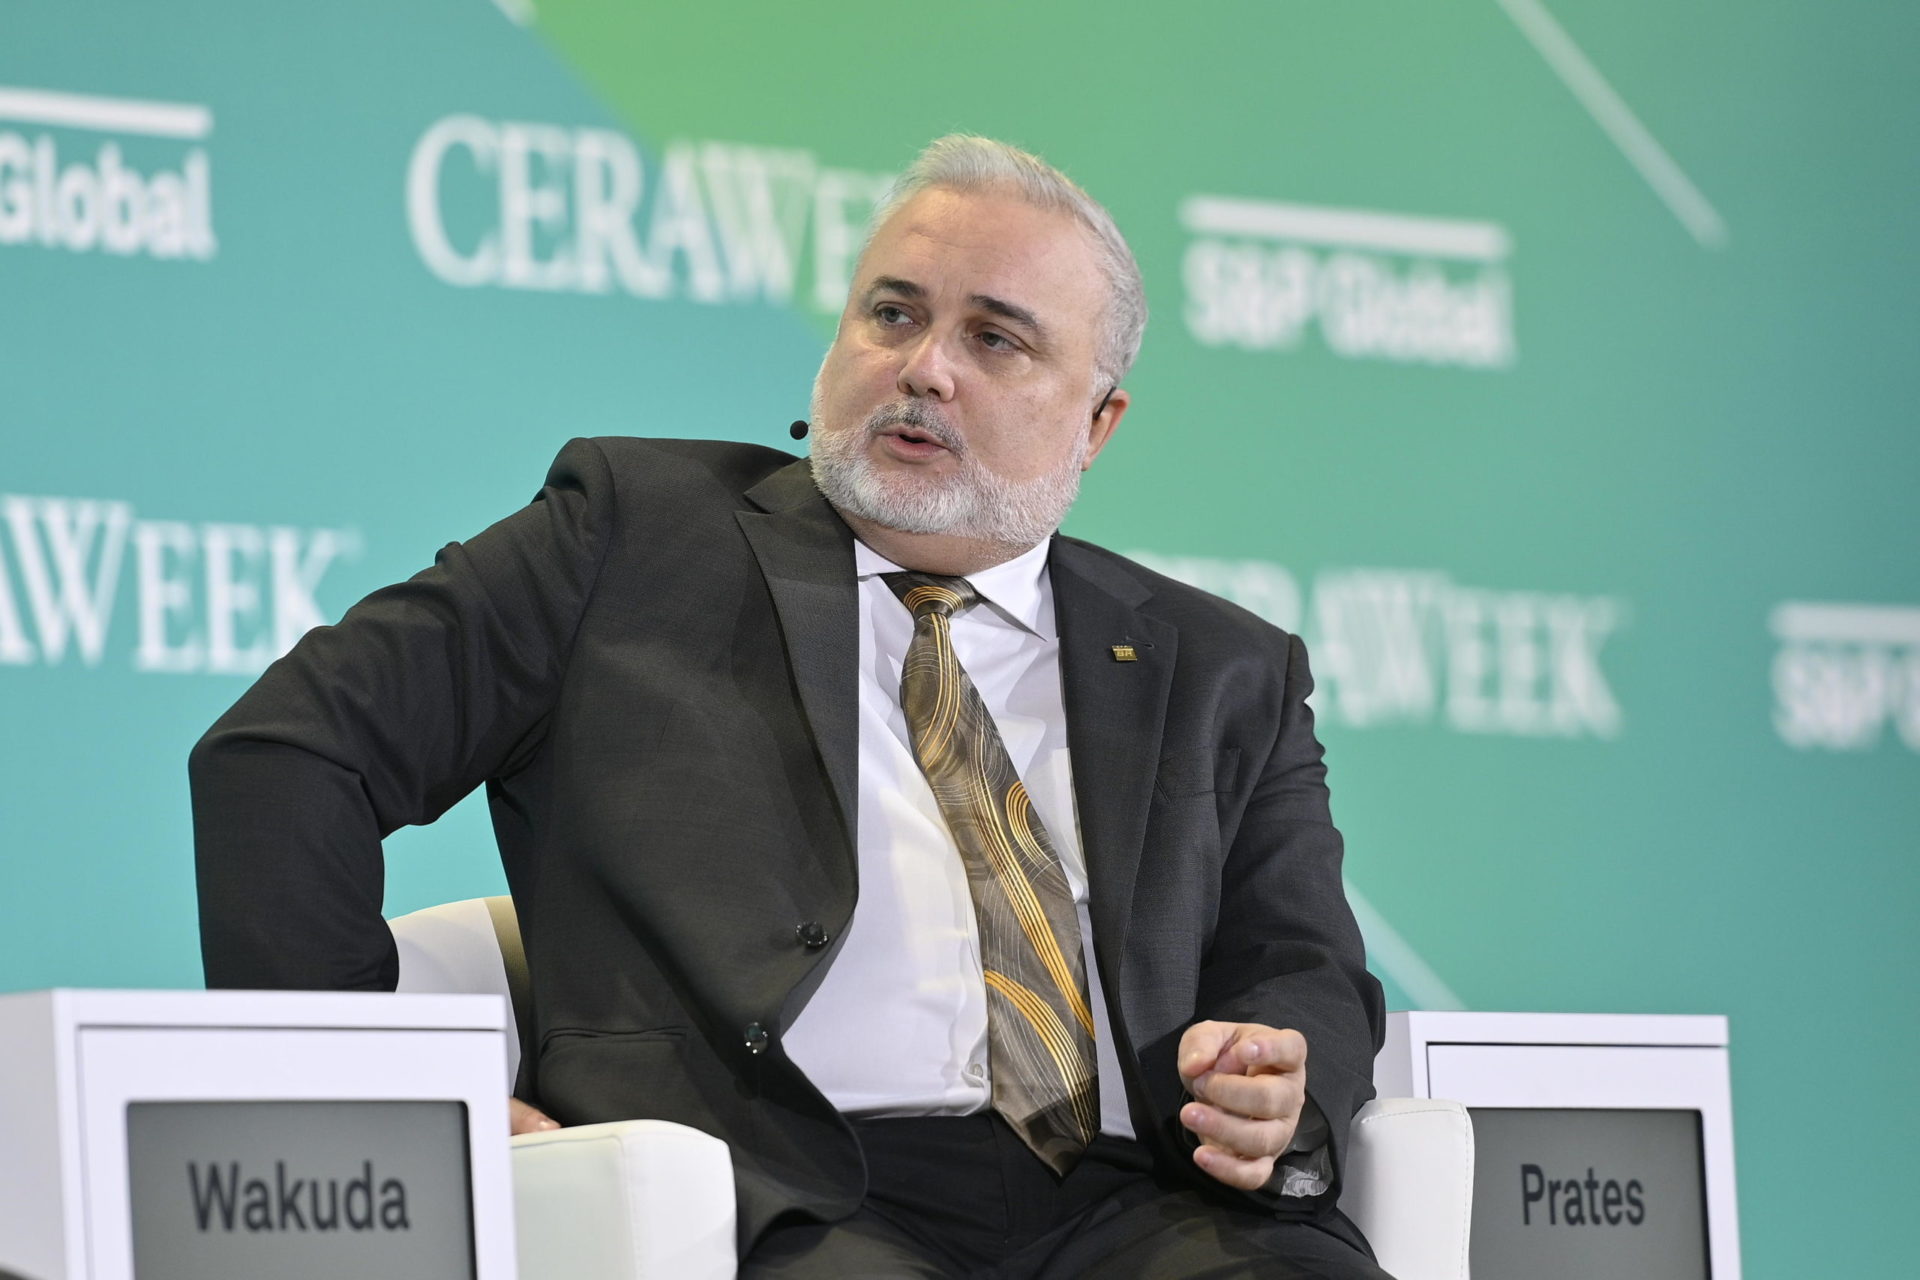 O presidente da Petrobras, Jean Paul Prates, durante participação na Cera Week (Foto: Petrobras)